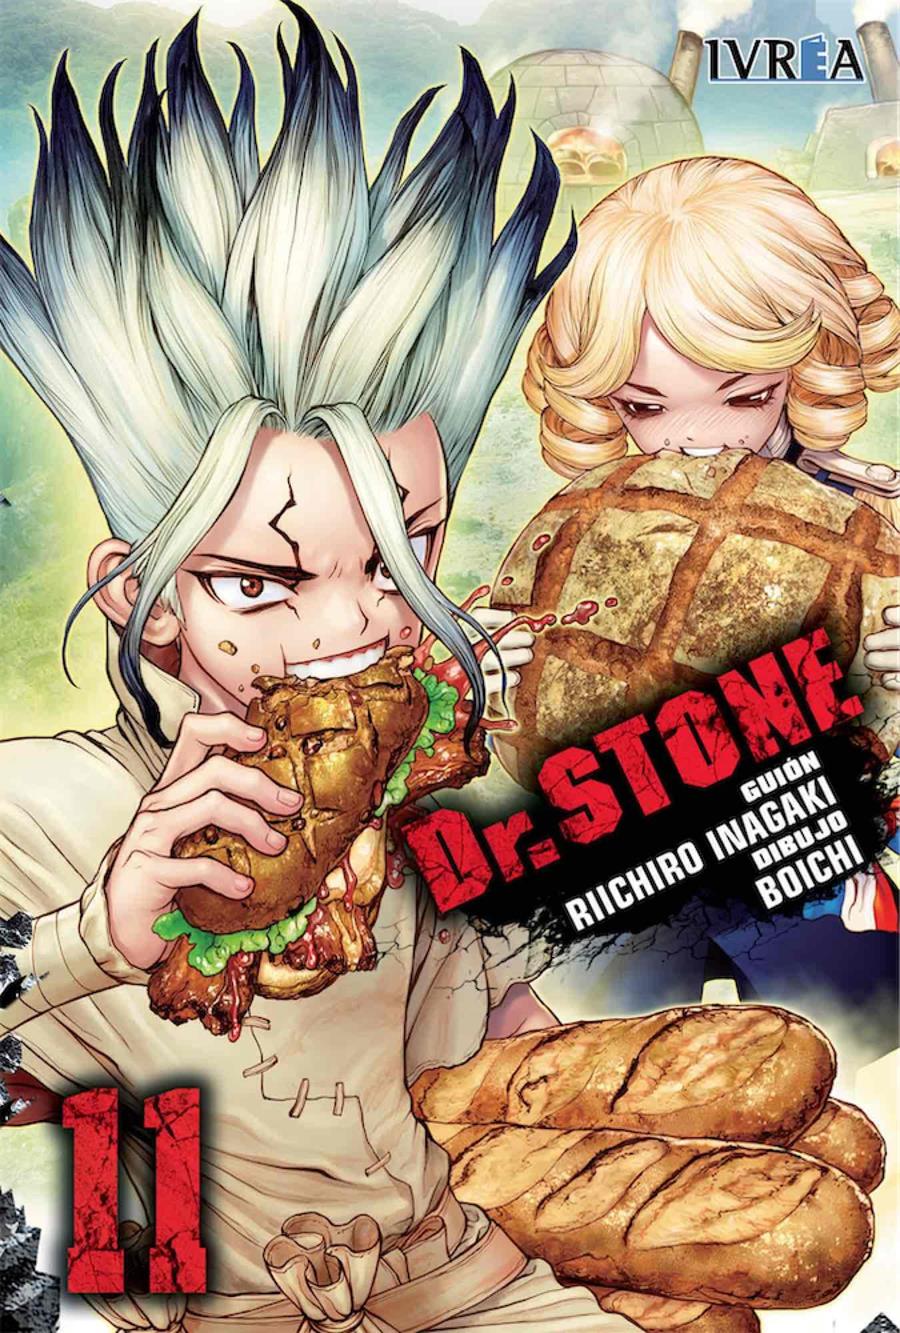 Dr. Stone 11 | N0120-IVR02 | Riichiro Inagaki, Boichi | Terra de Còmic - Tu tienda de cómics online especializada en cómics, manga y merchandising